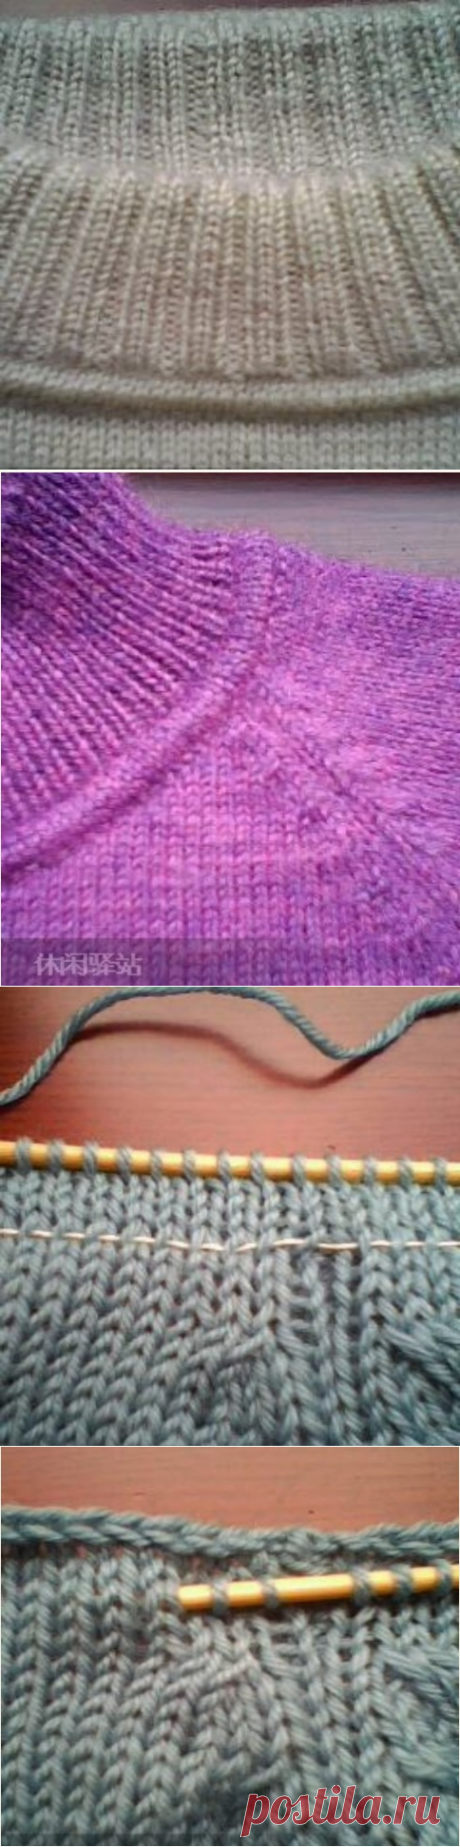 Как оформить такой переход от горловины к воротнику вязаного свитера или джемпера,мастер-класс подробно по фото